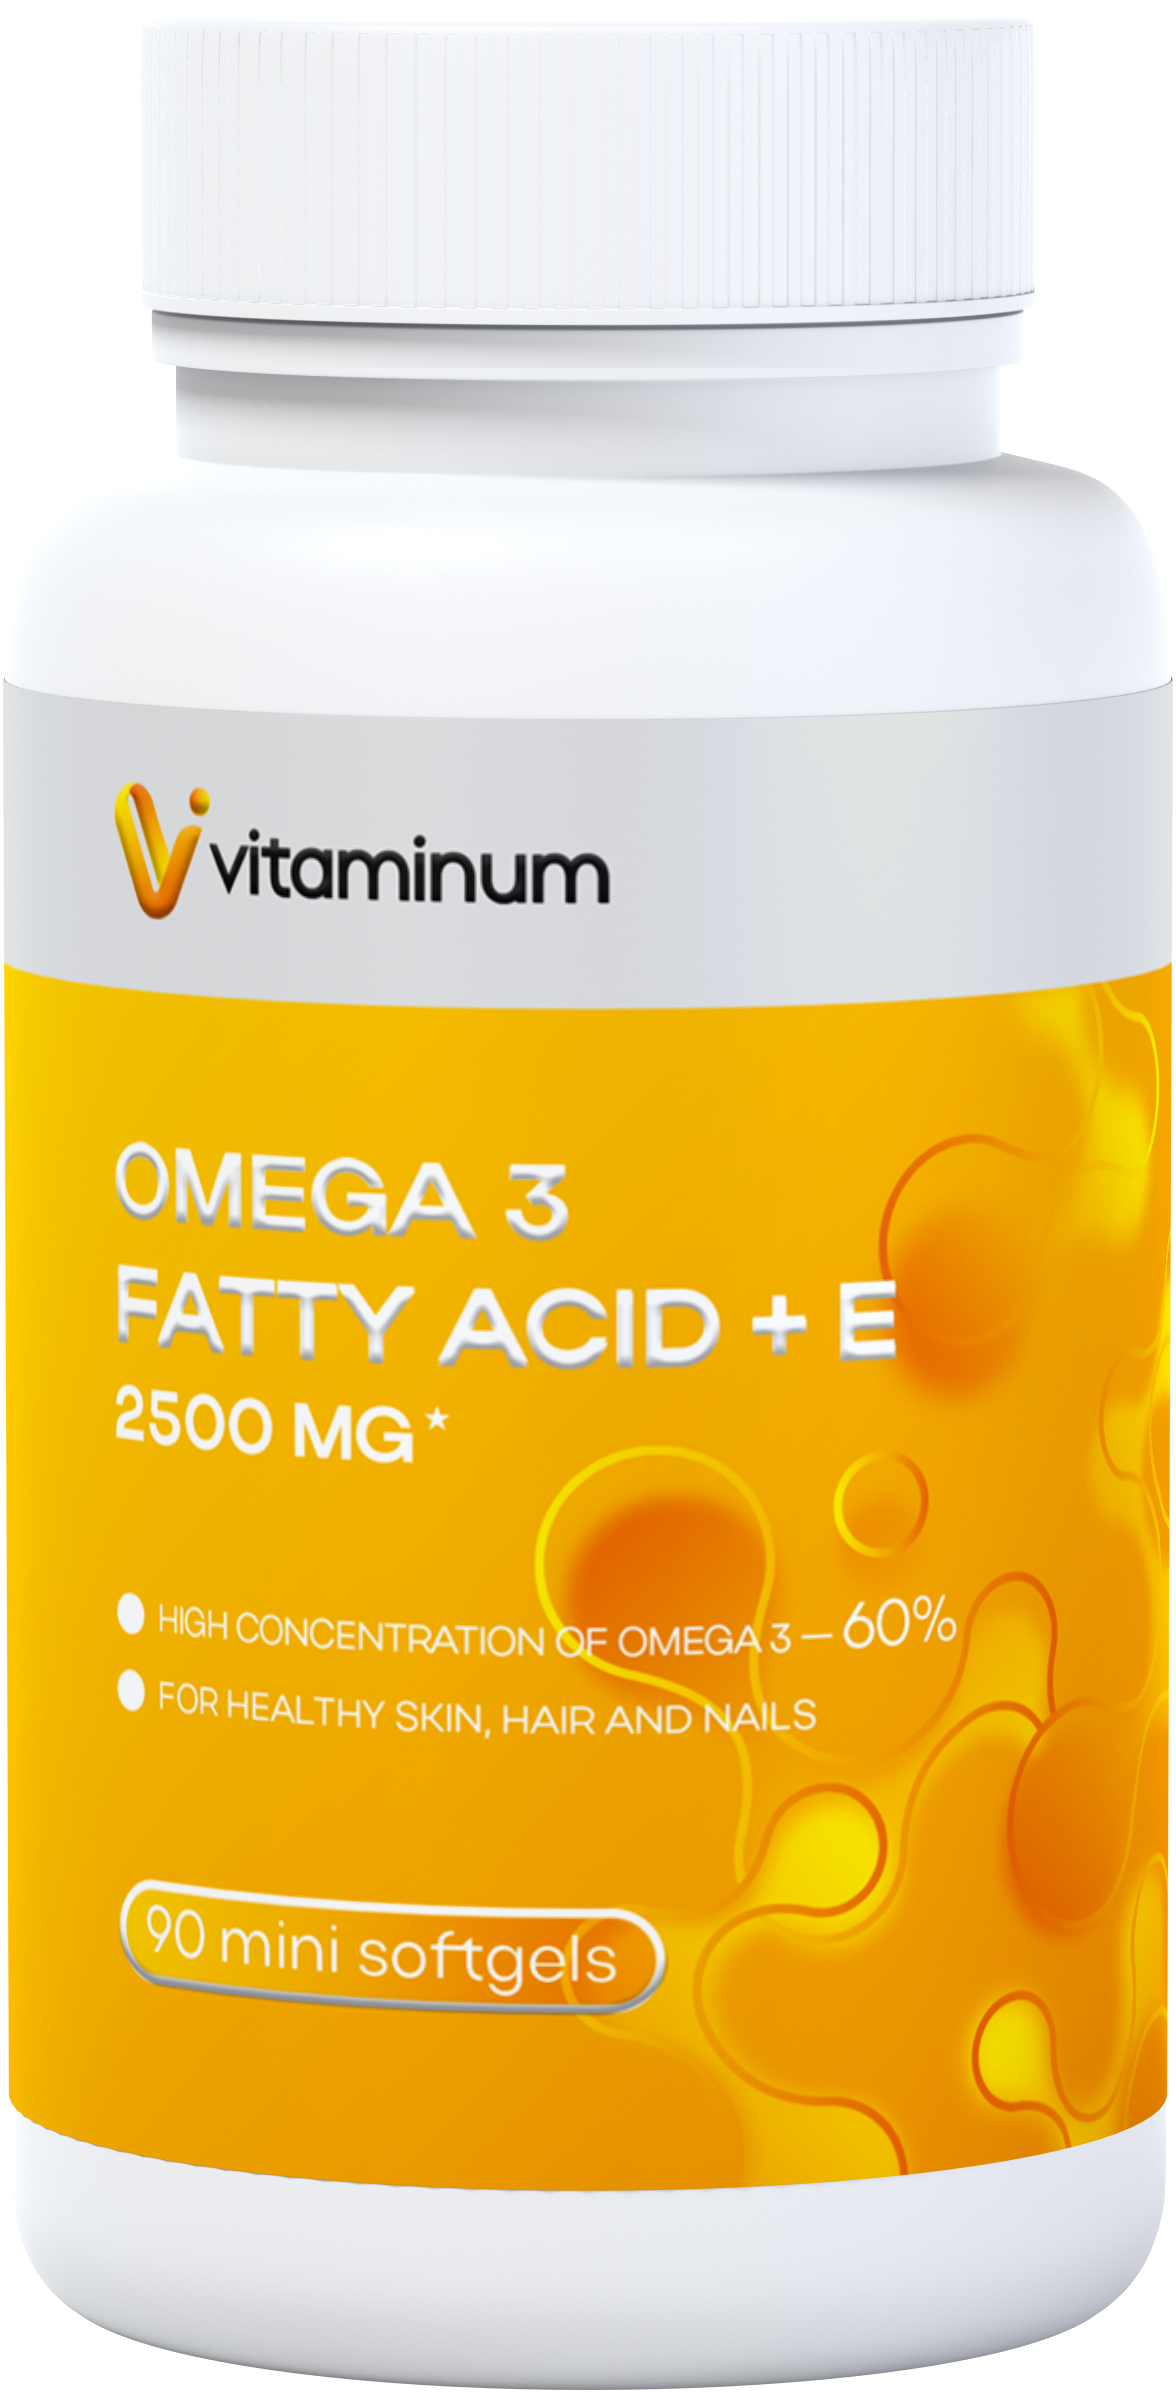  Vitaminum ОМЕГА 3 60% + витамин Е (2500 MG*) 90 капсул 700 мг   в Казани